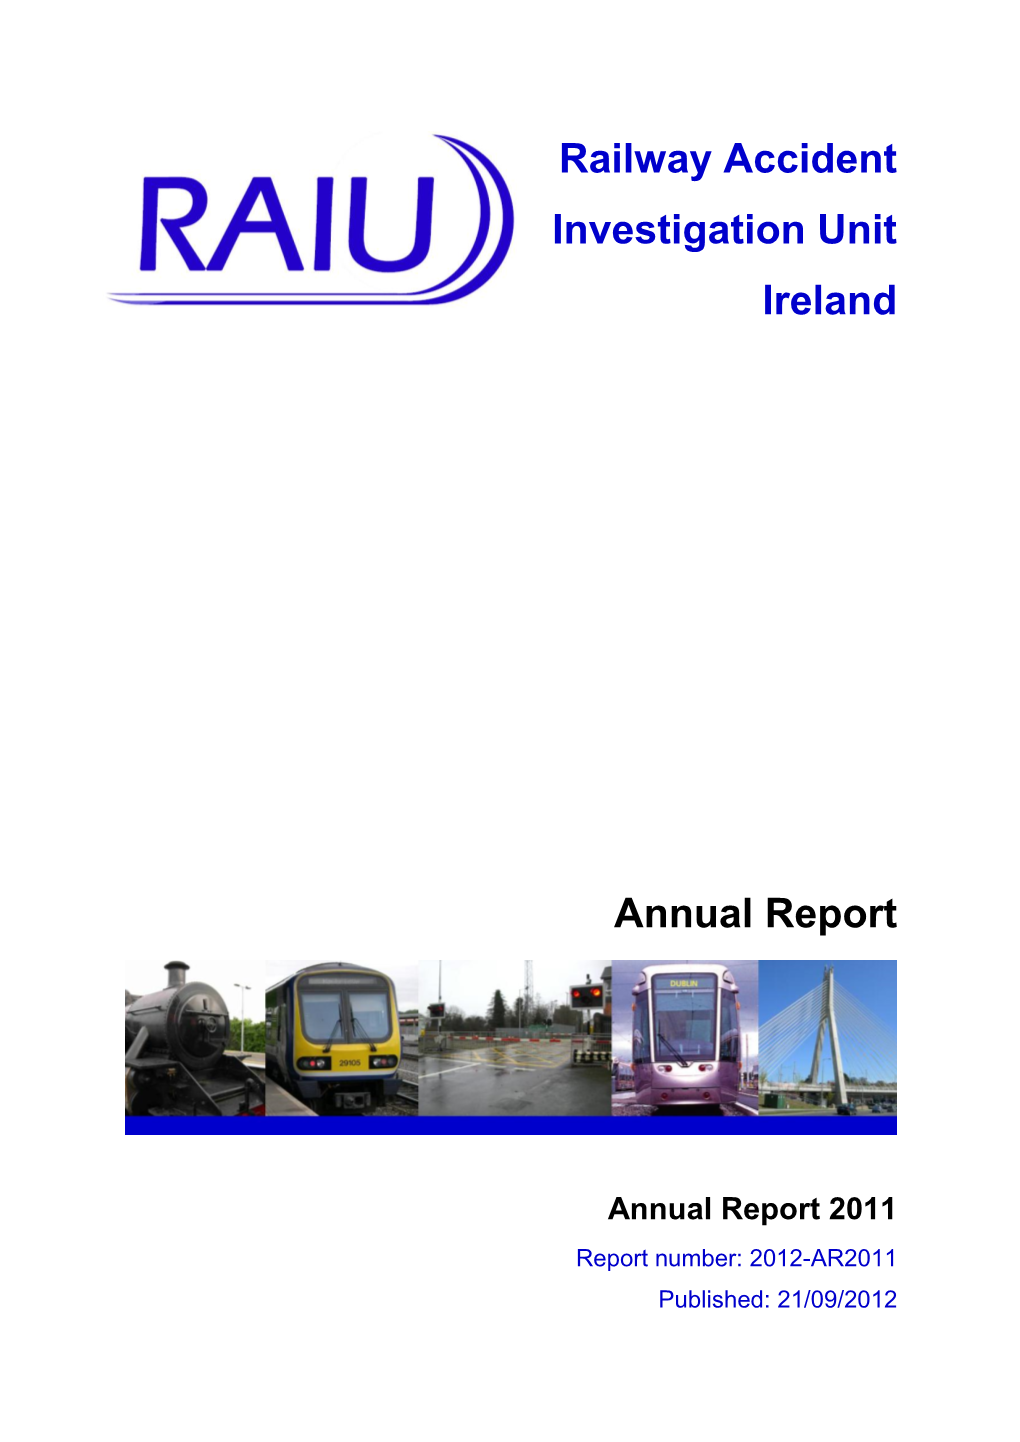 Railway Accident Investigation Unit Ireland Annual Report